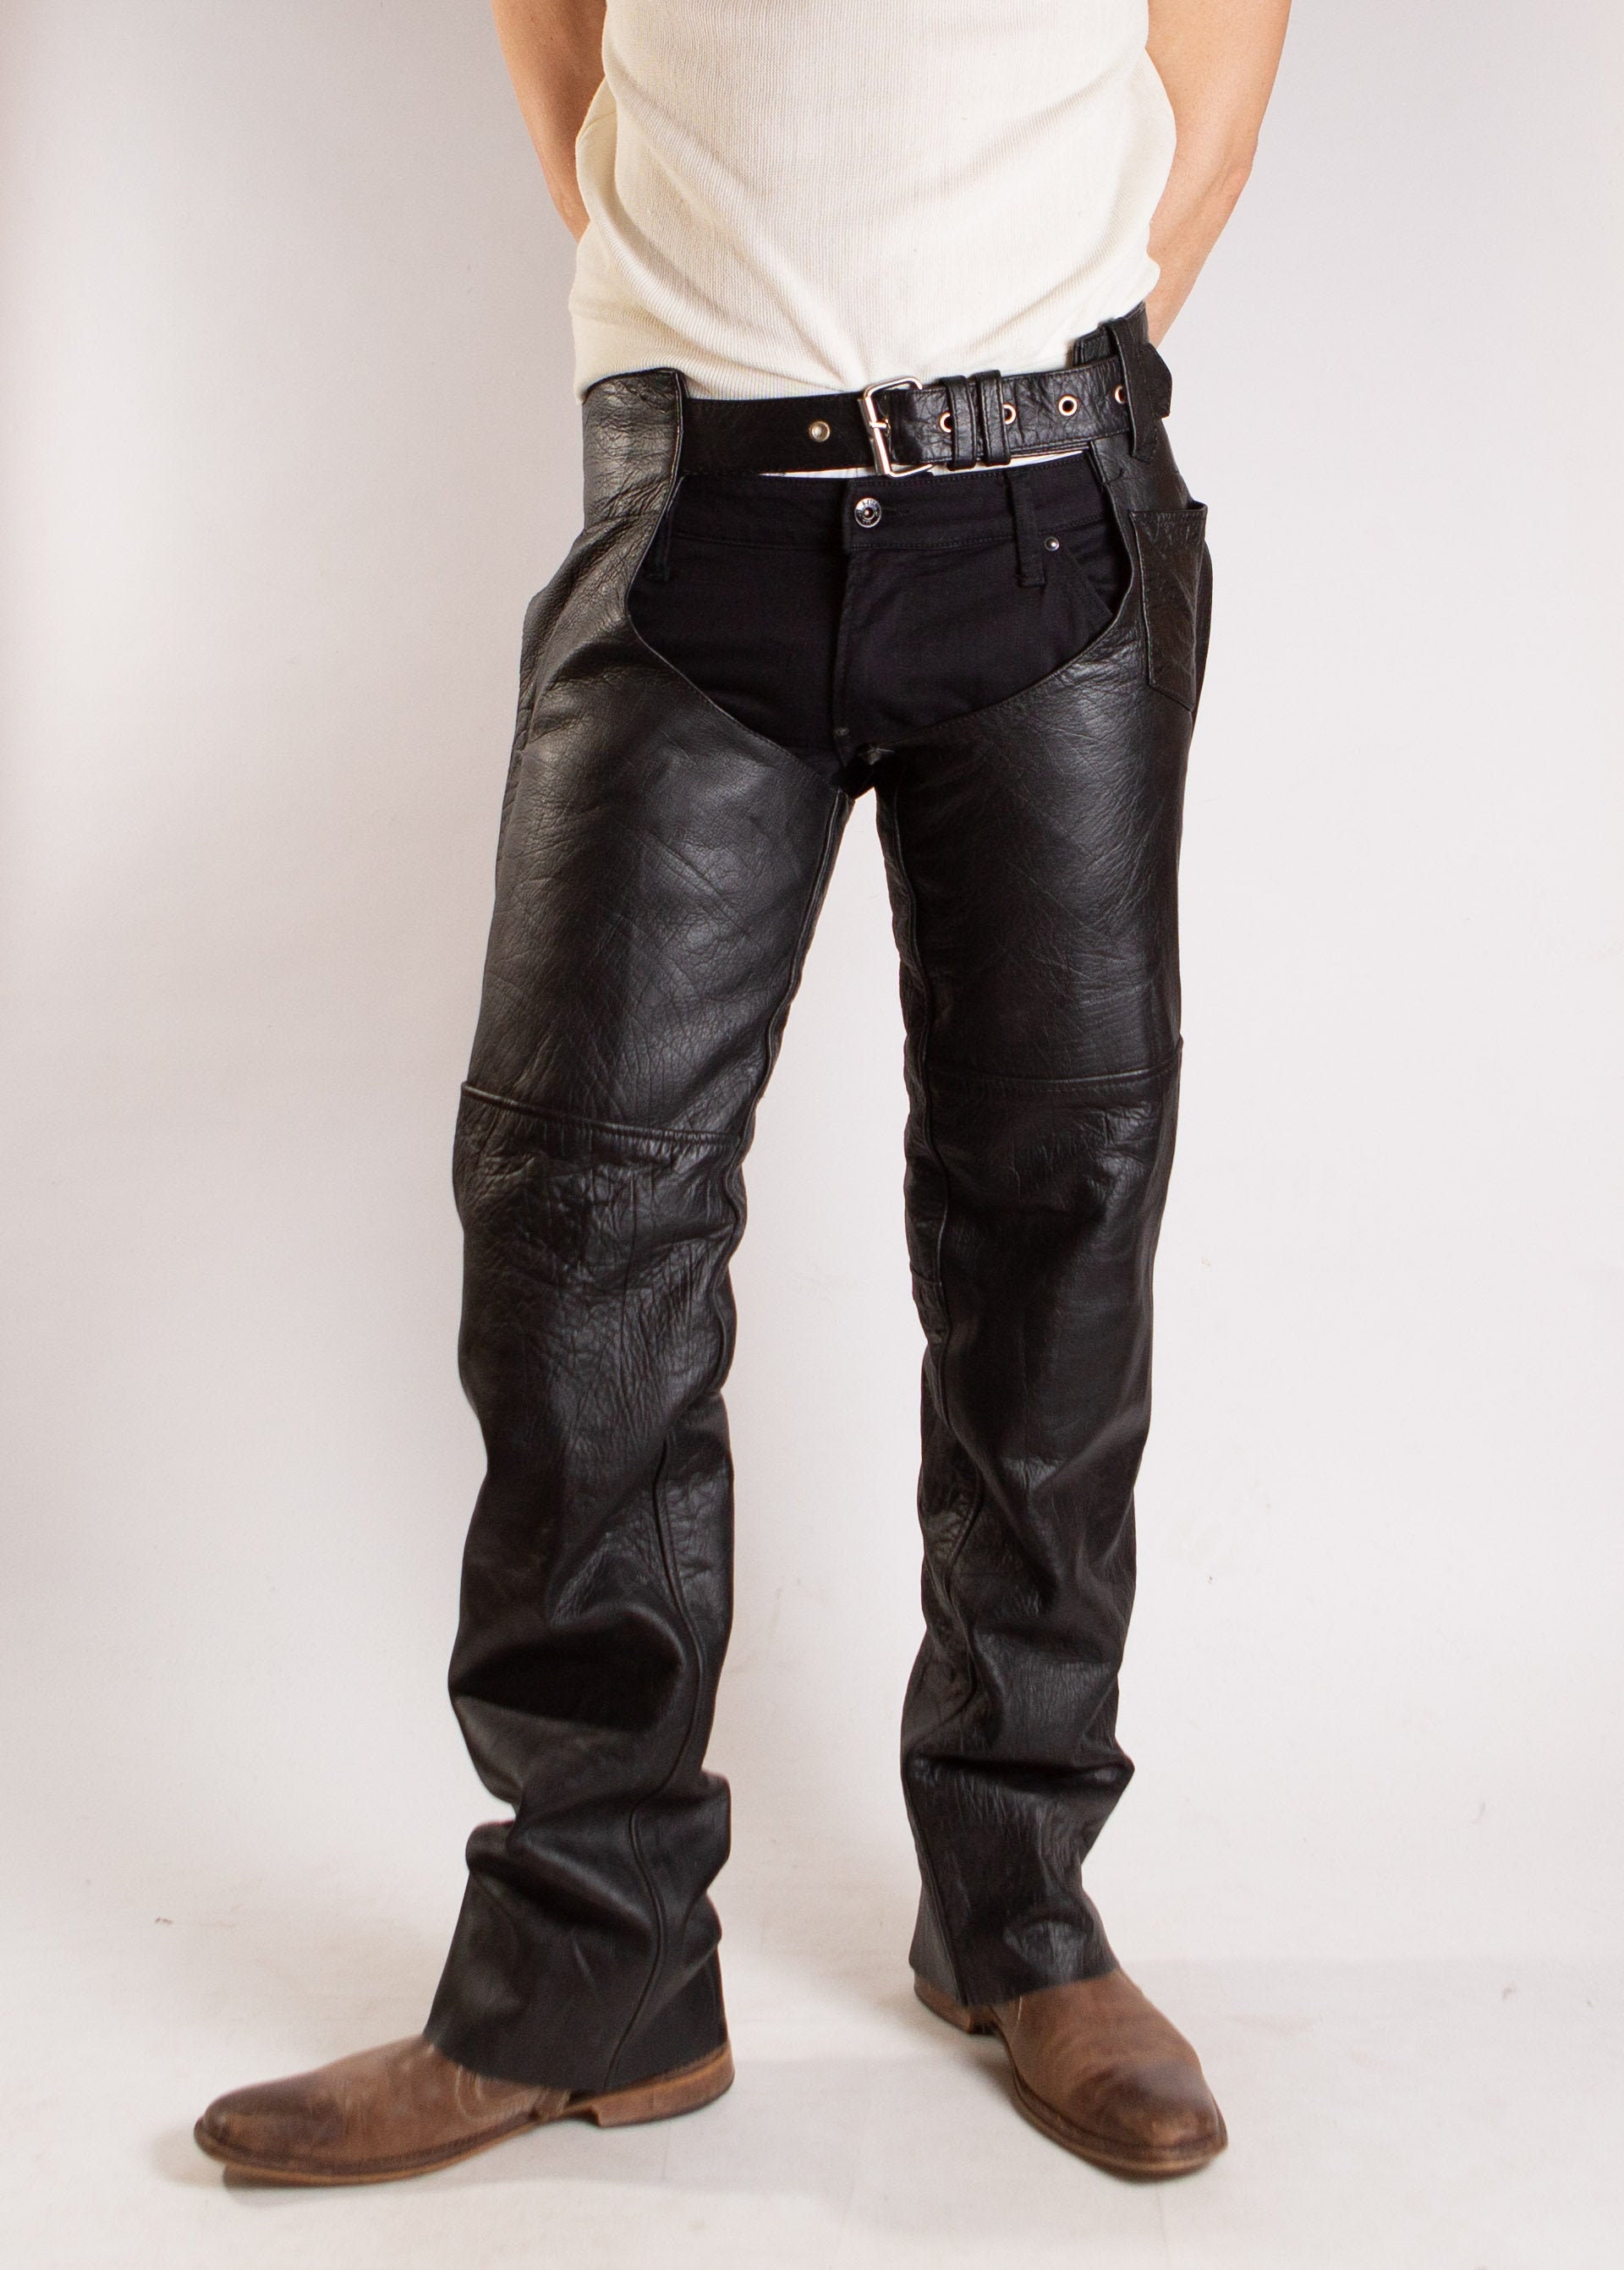 Vintage Leather Chaps Men's Black Biker Zip Up Leg Chap | Etsy